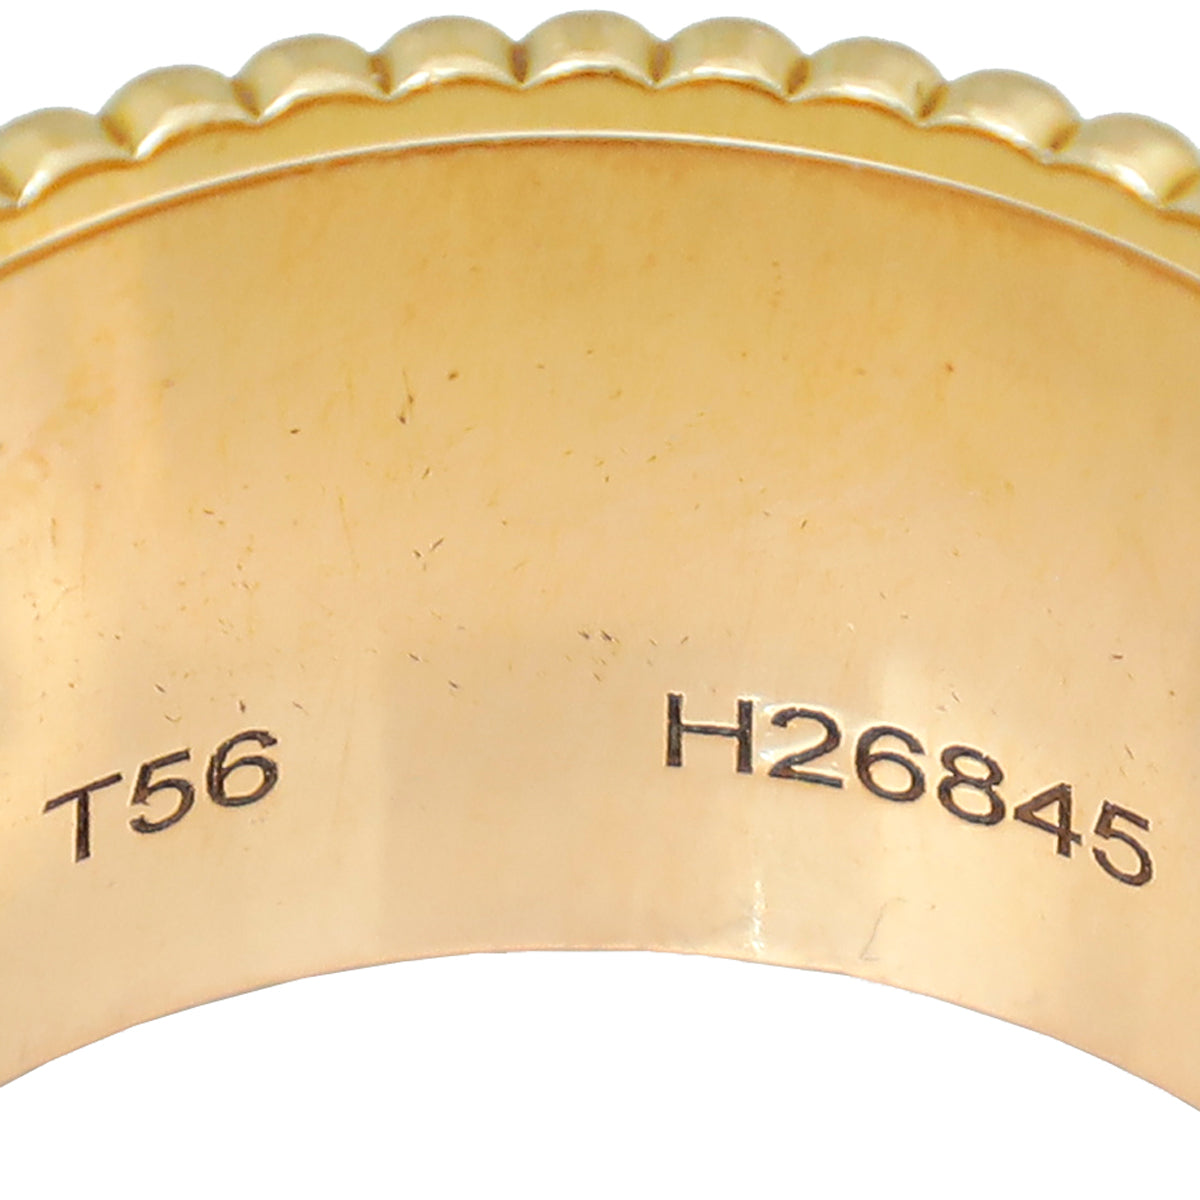 Boucheron 18K Tricolor Gold Quatre Classique Large Model Ring 56